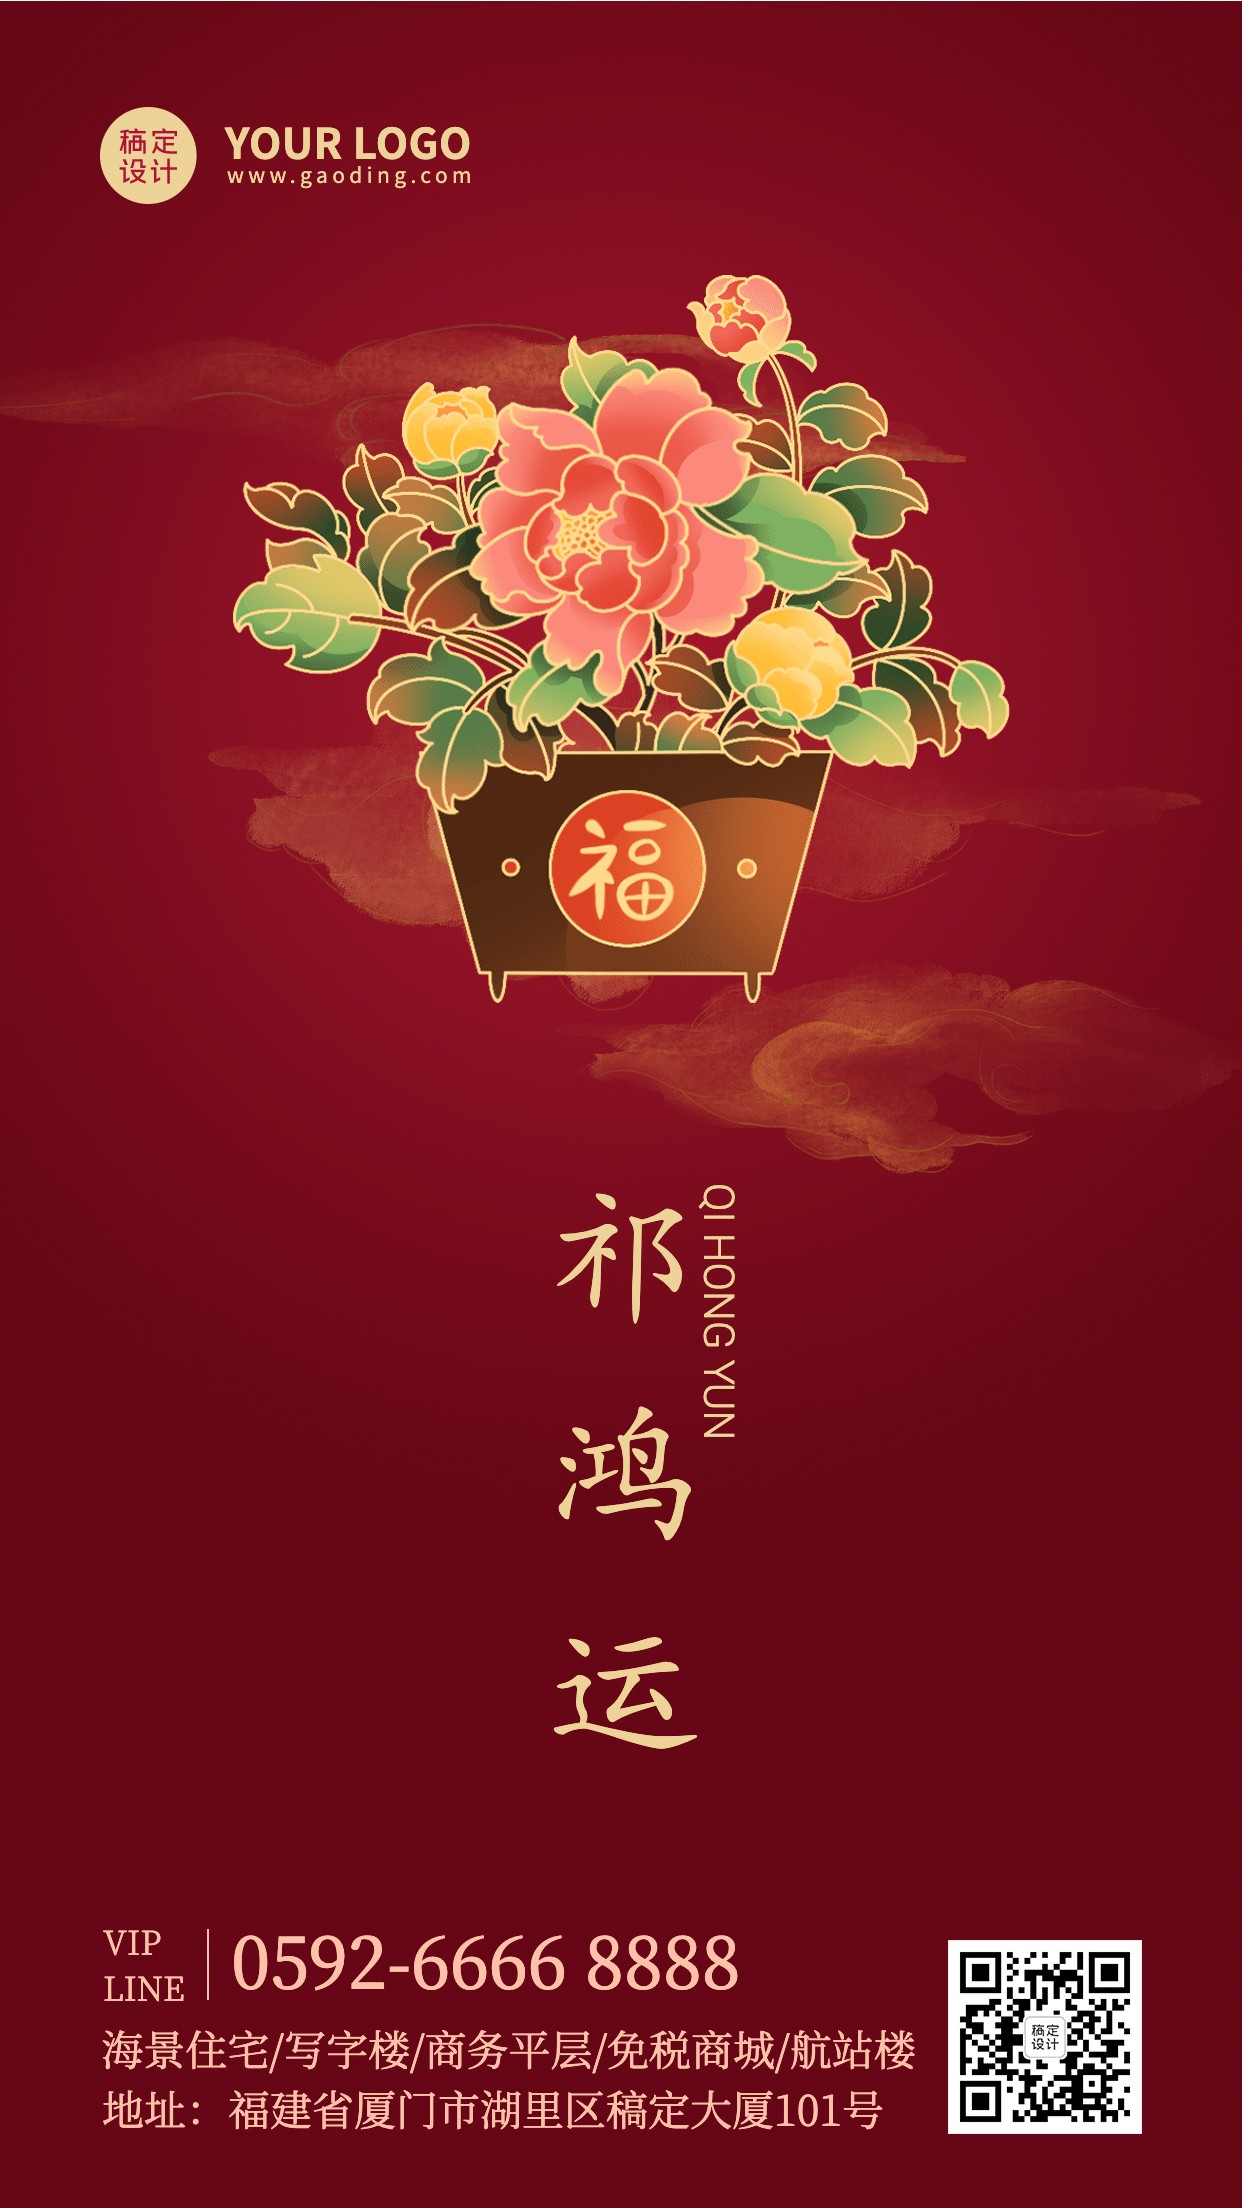 春节地产服务节日祝福喜庆海报